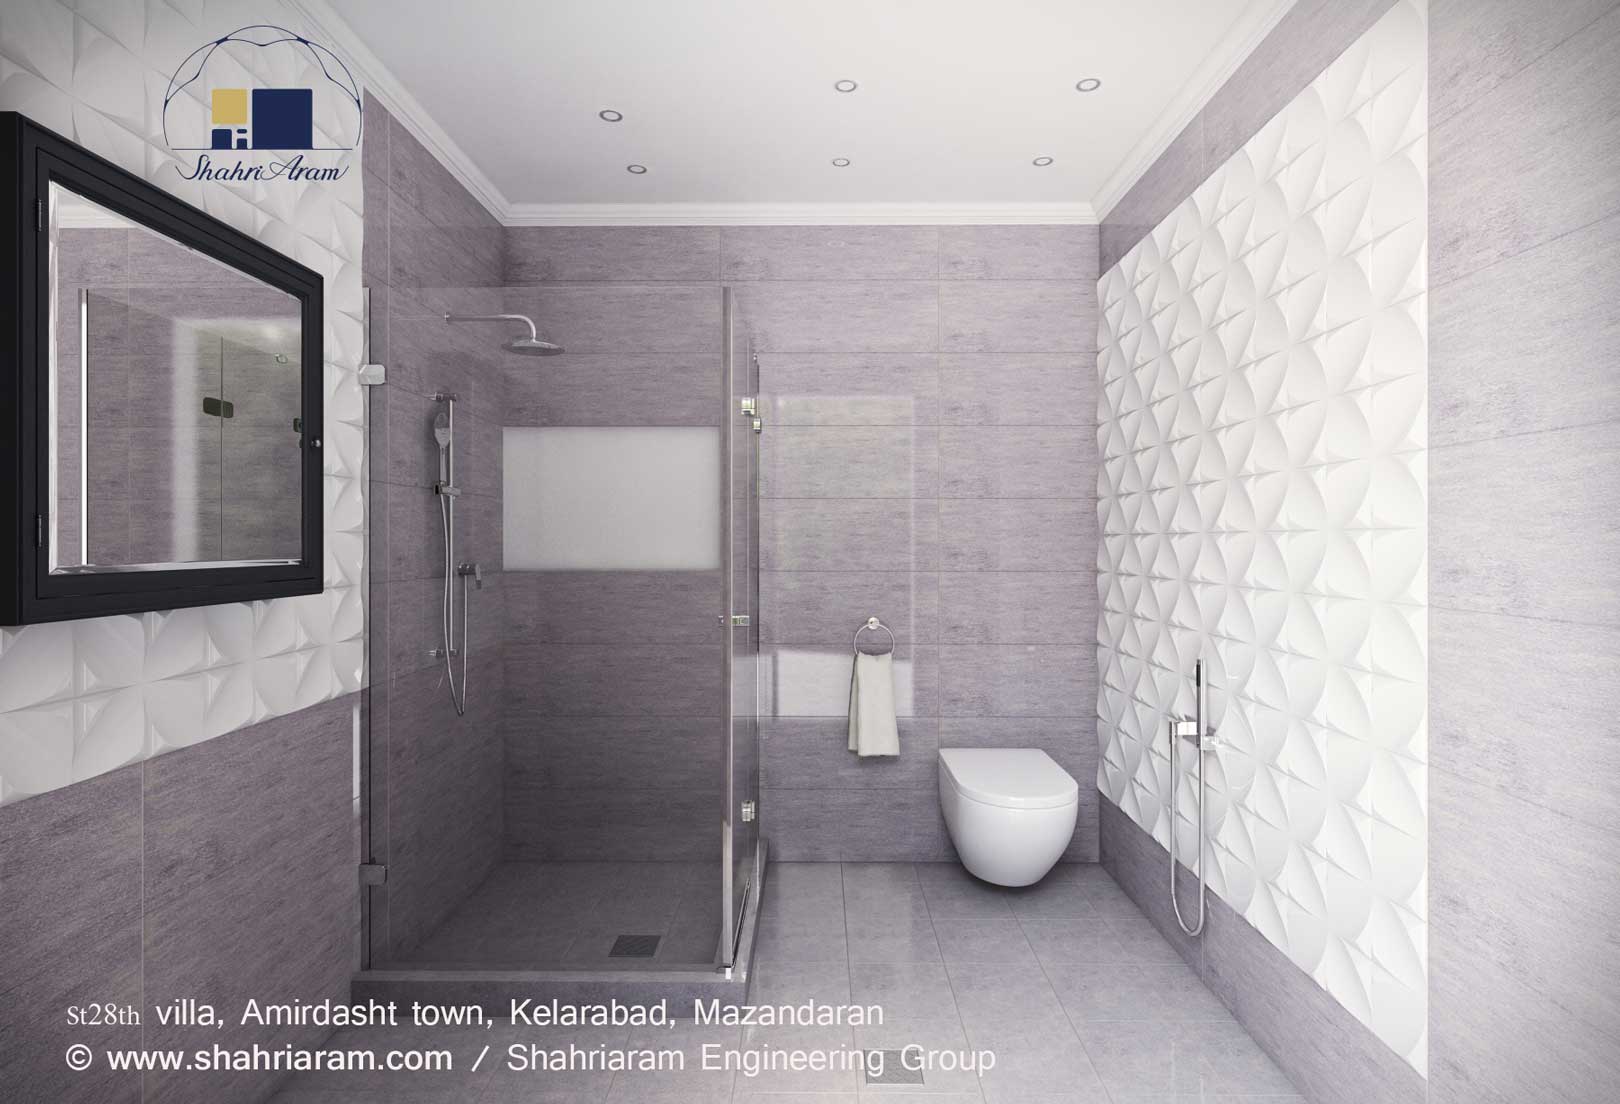 طراحی داخلی سرویس های بهداشتی ویلای کلاسیک شهرک امیردشت کلارآباد مازندران